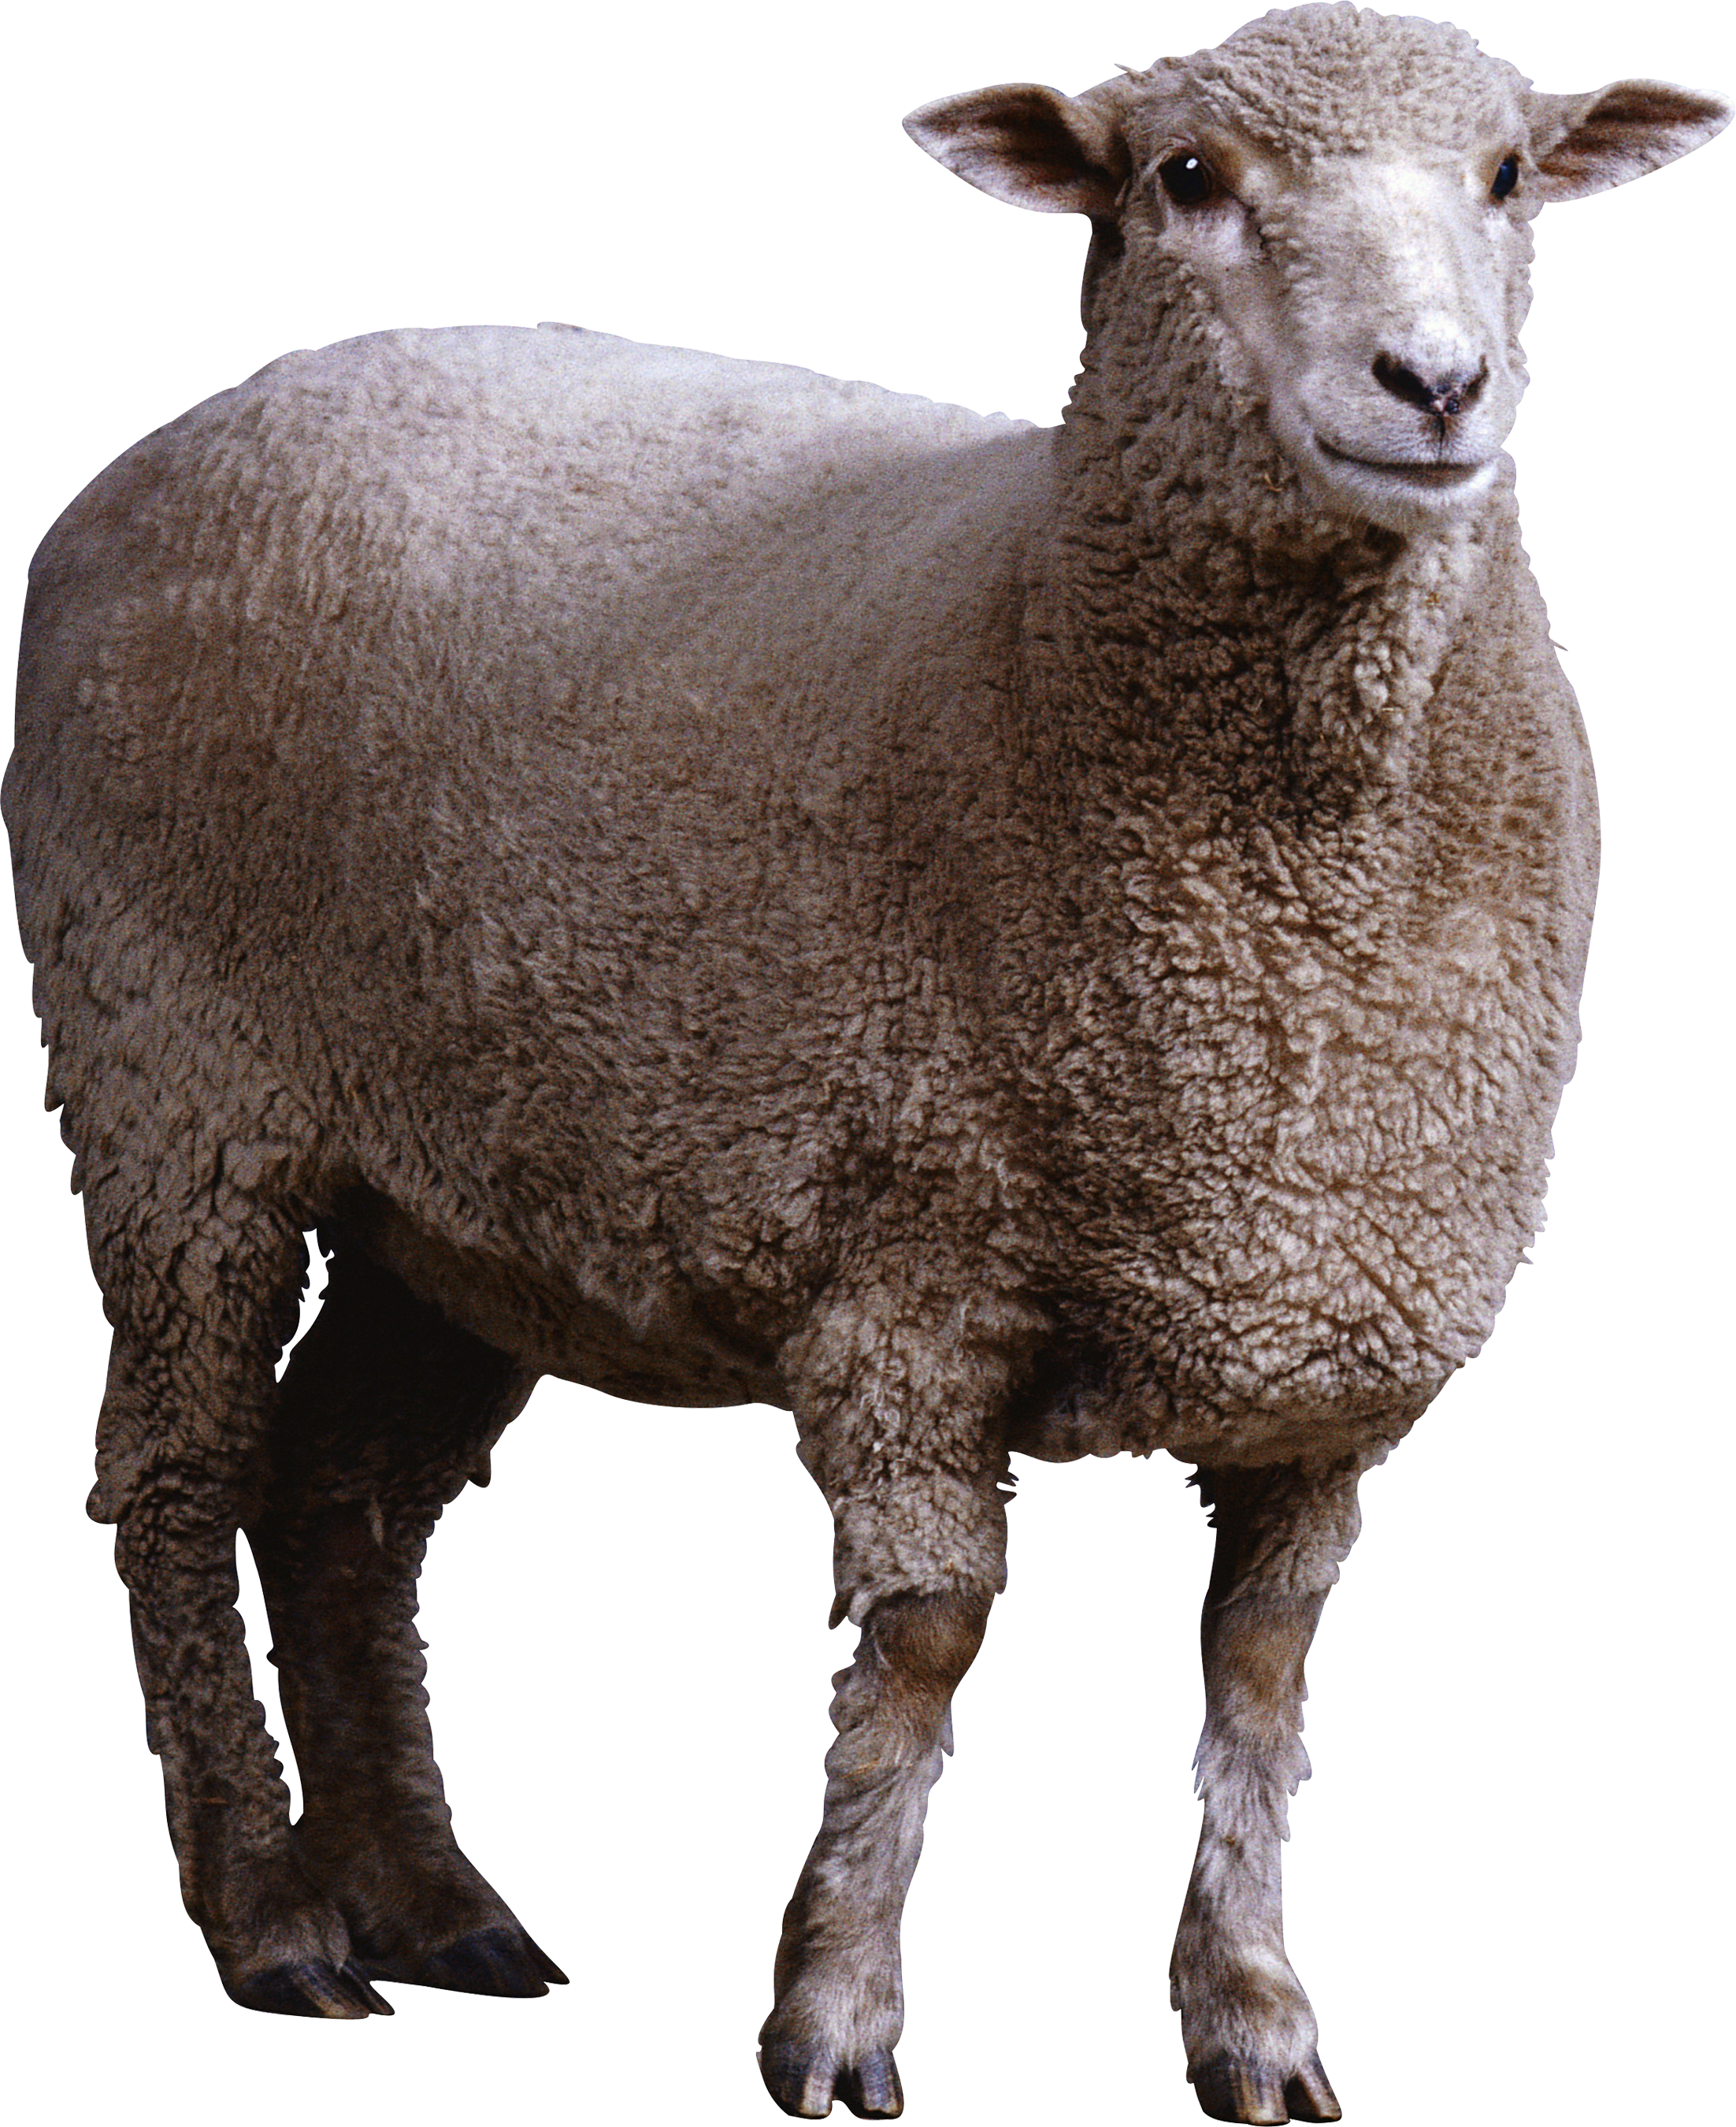 Un mouton